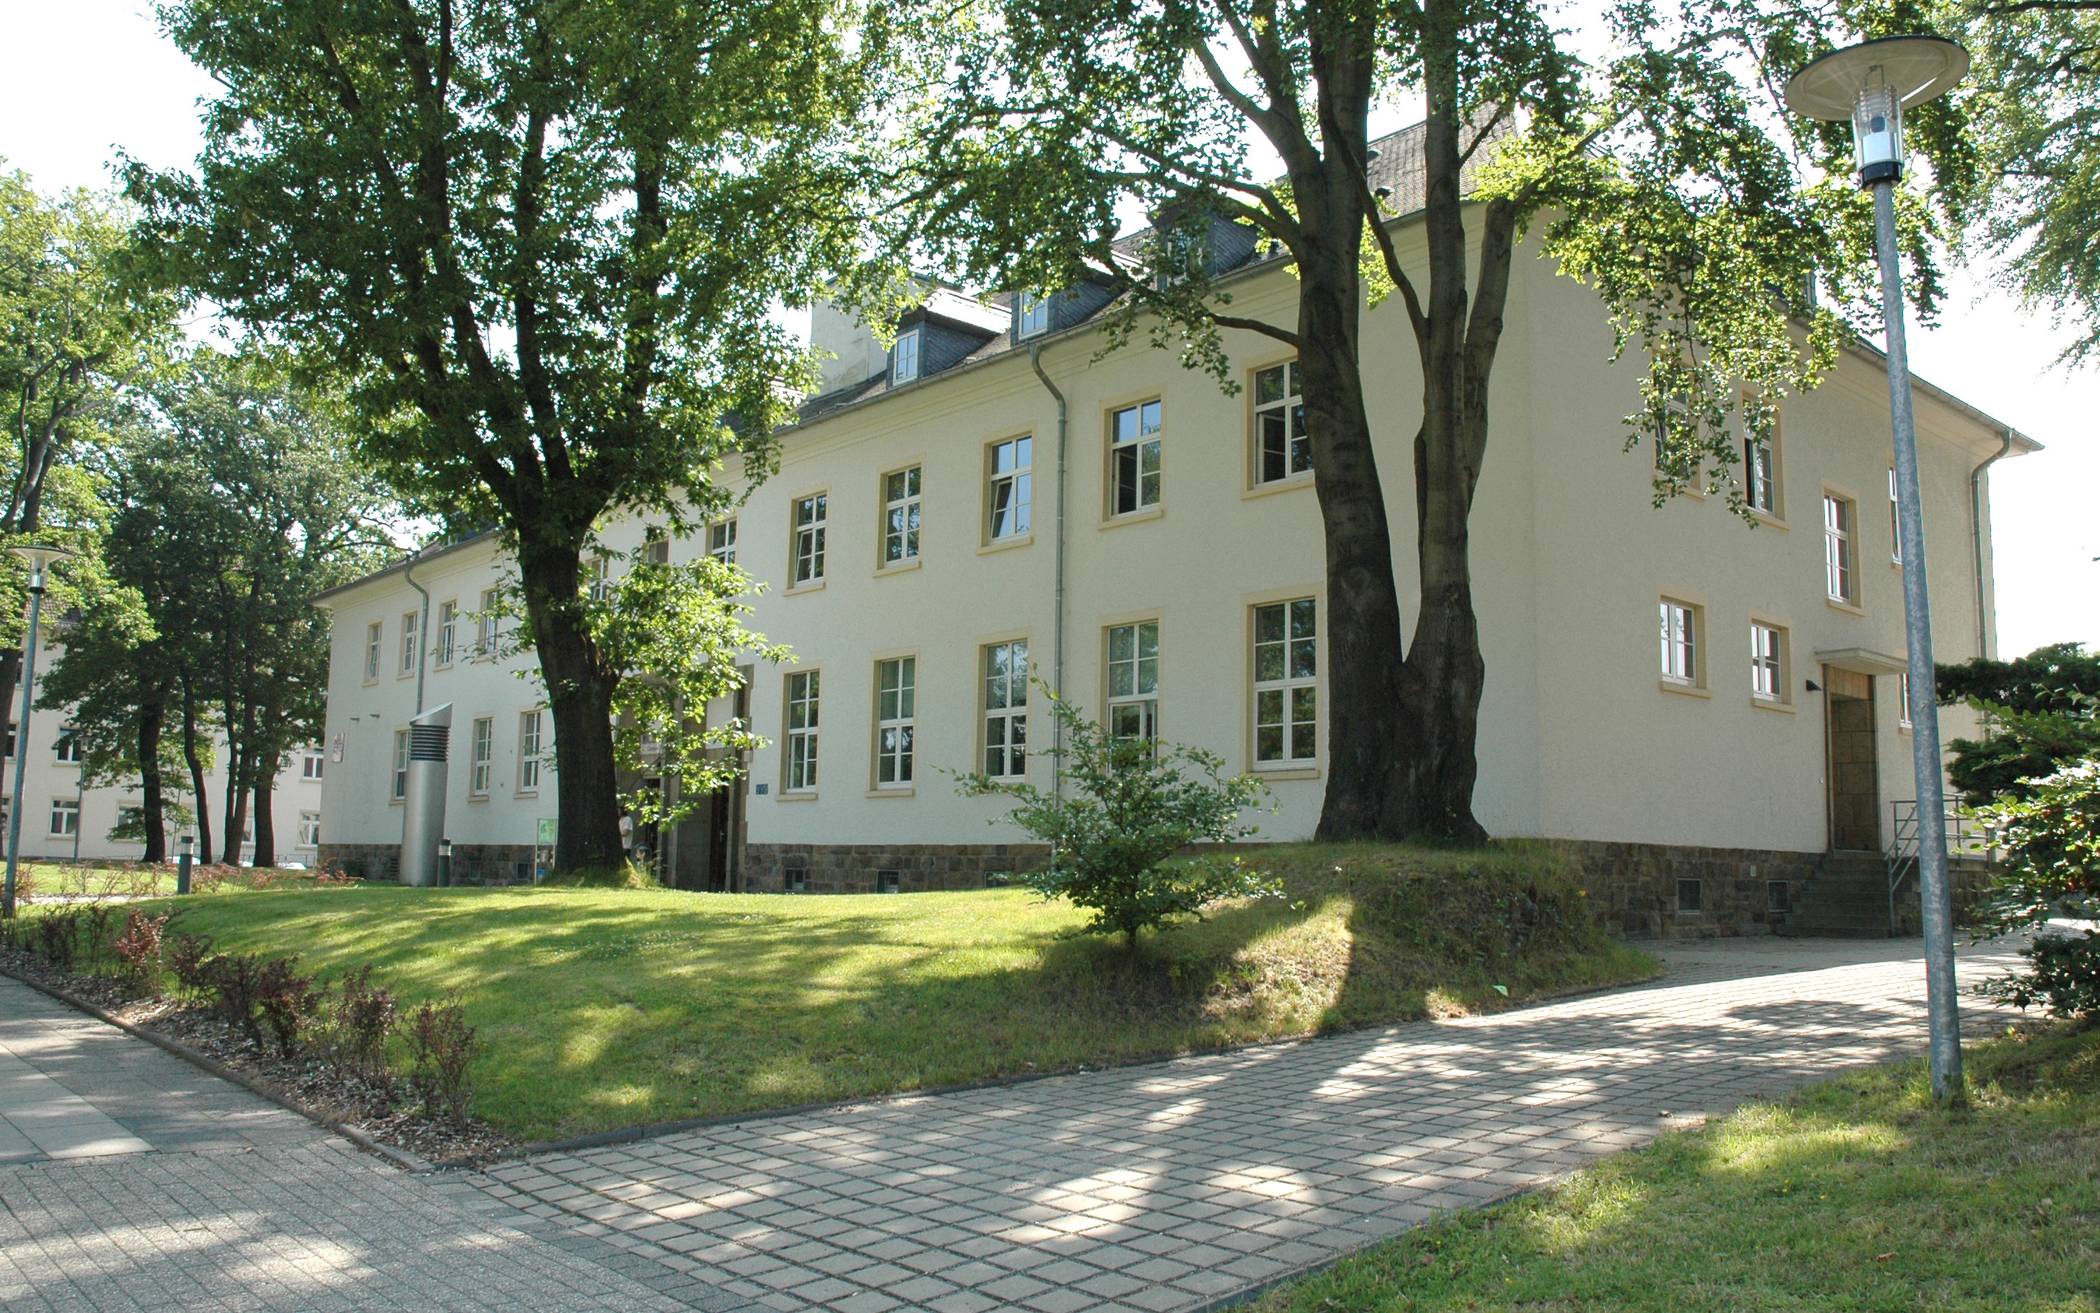  Auf dem Uni-Campus am Freudenberg entsteht das Wuppertaler Impfzentrum. 